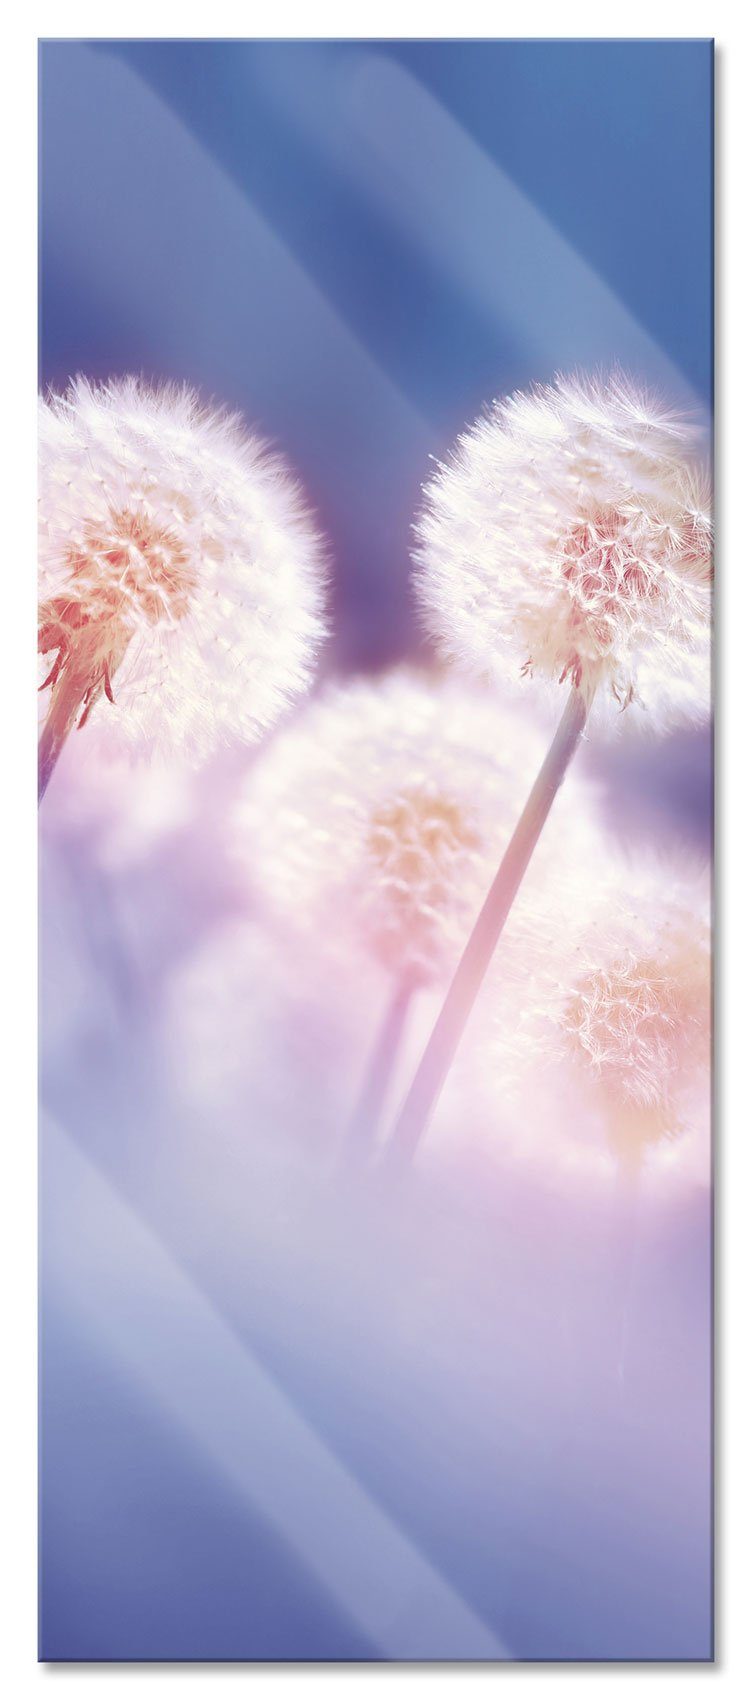 Pixxprint Glasbild Pusteblumen im morgendlichen Wind, Pusteblumen im morgendlichen Wind (1 St), Glasbild aus Echtglas, inkl. Aufhängungen und Abstandshalter